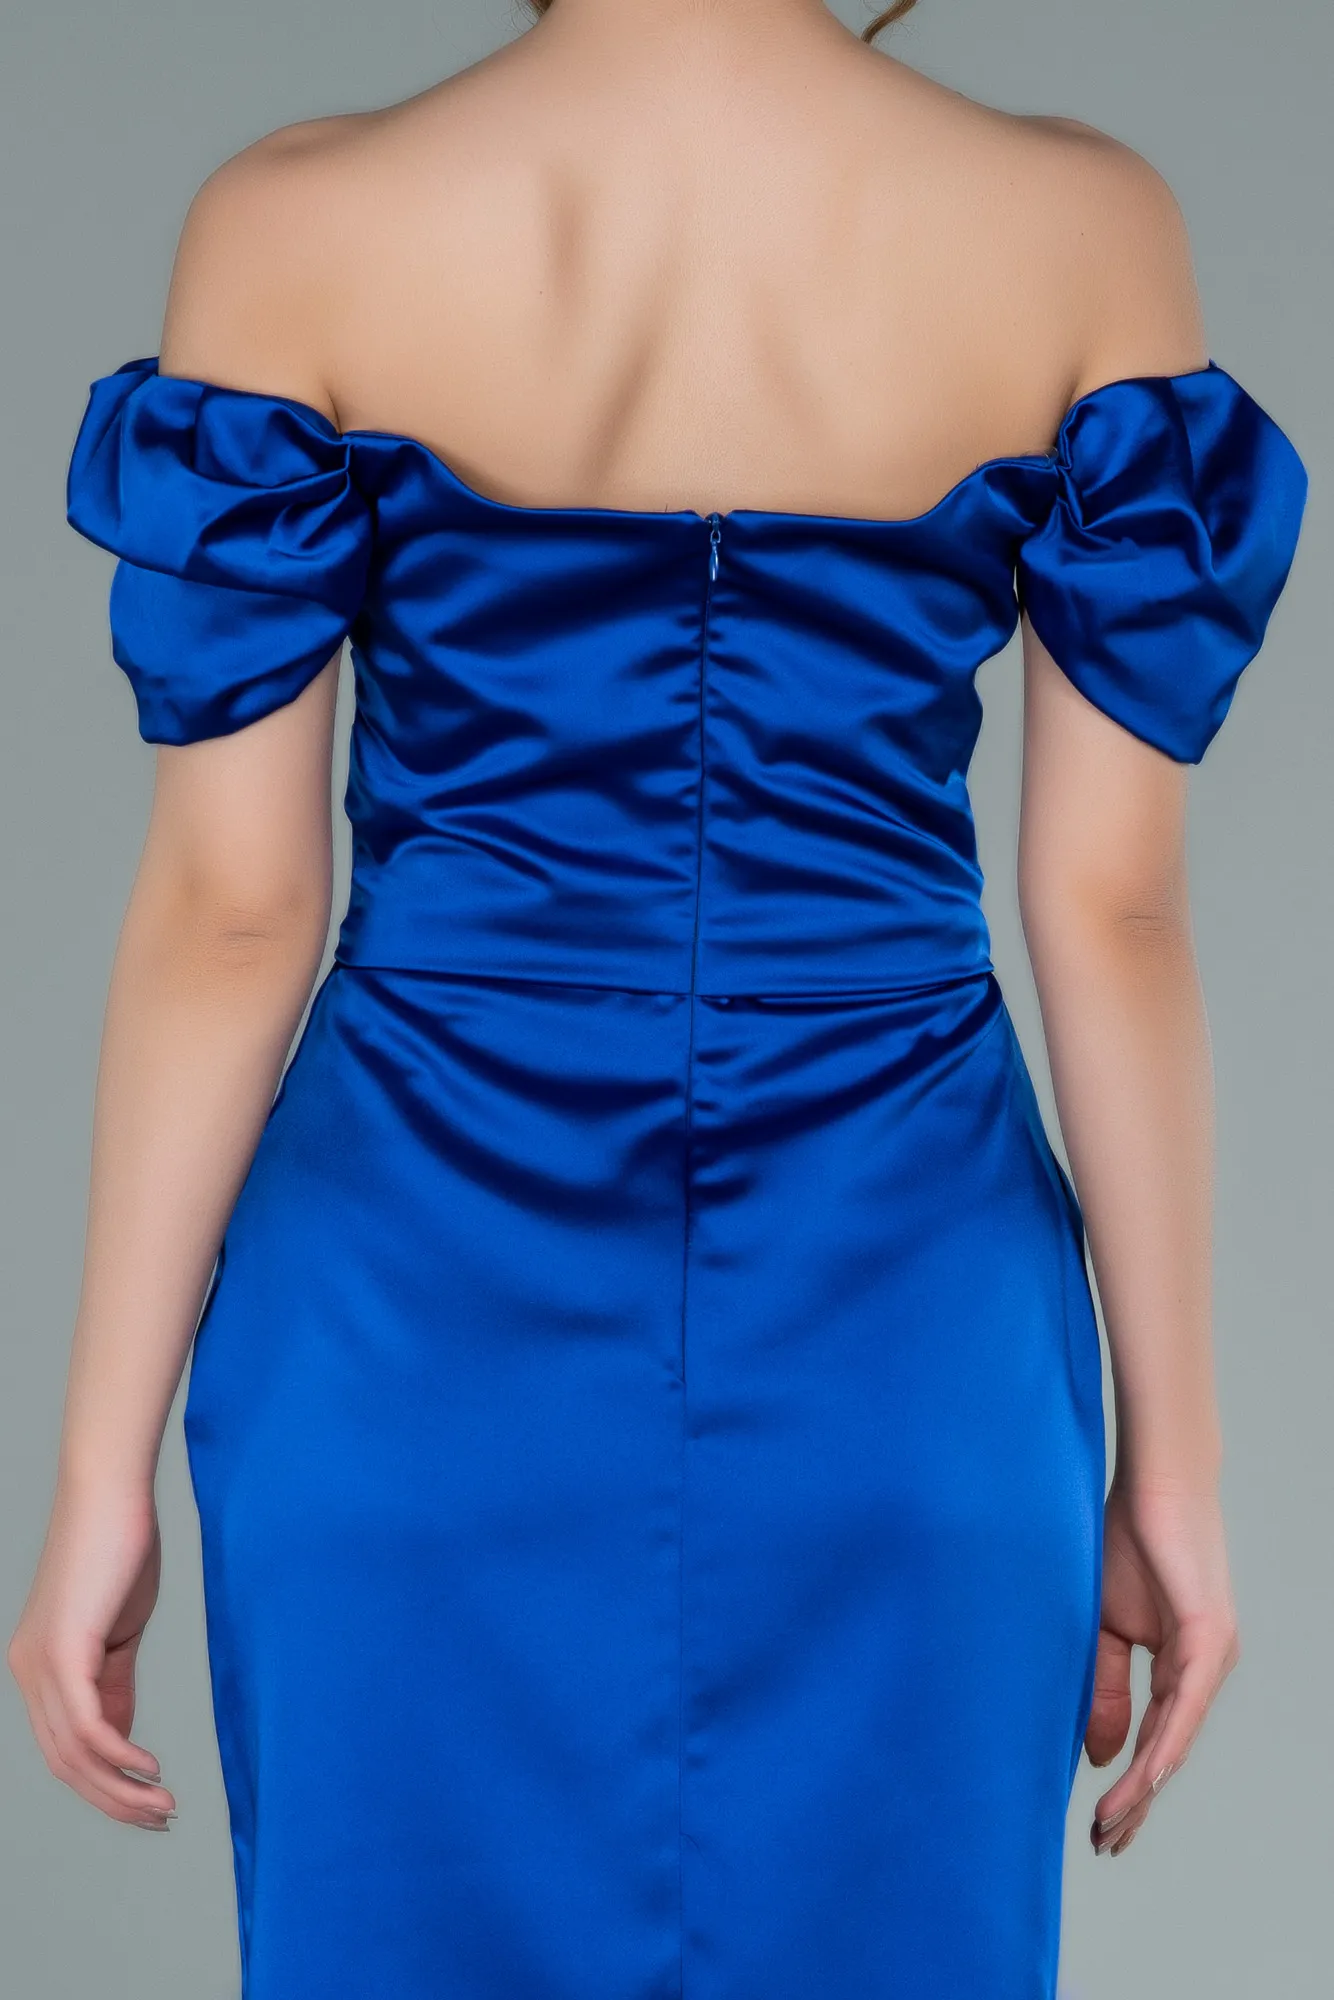 Sax Blue-Short Satin Invitation Dress ABK1394